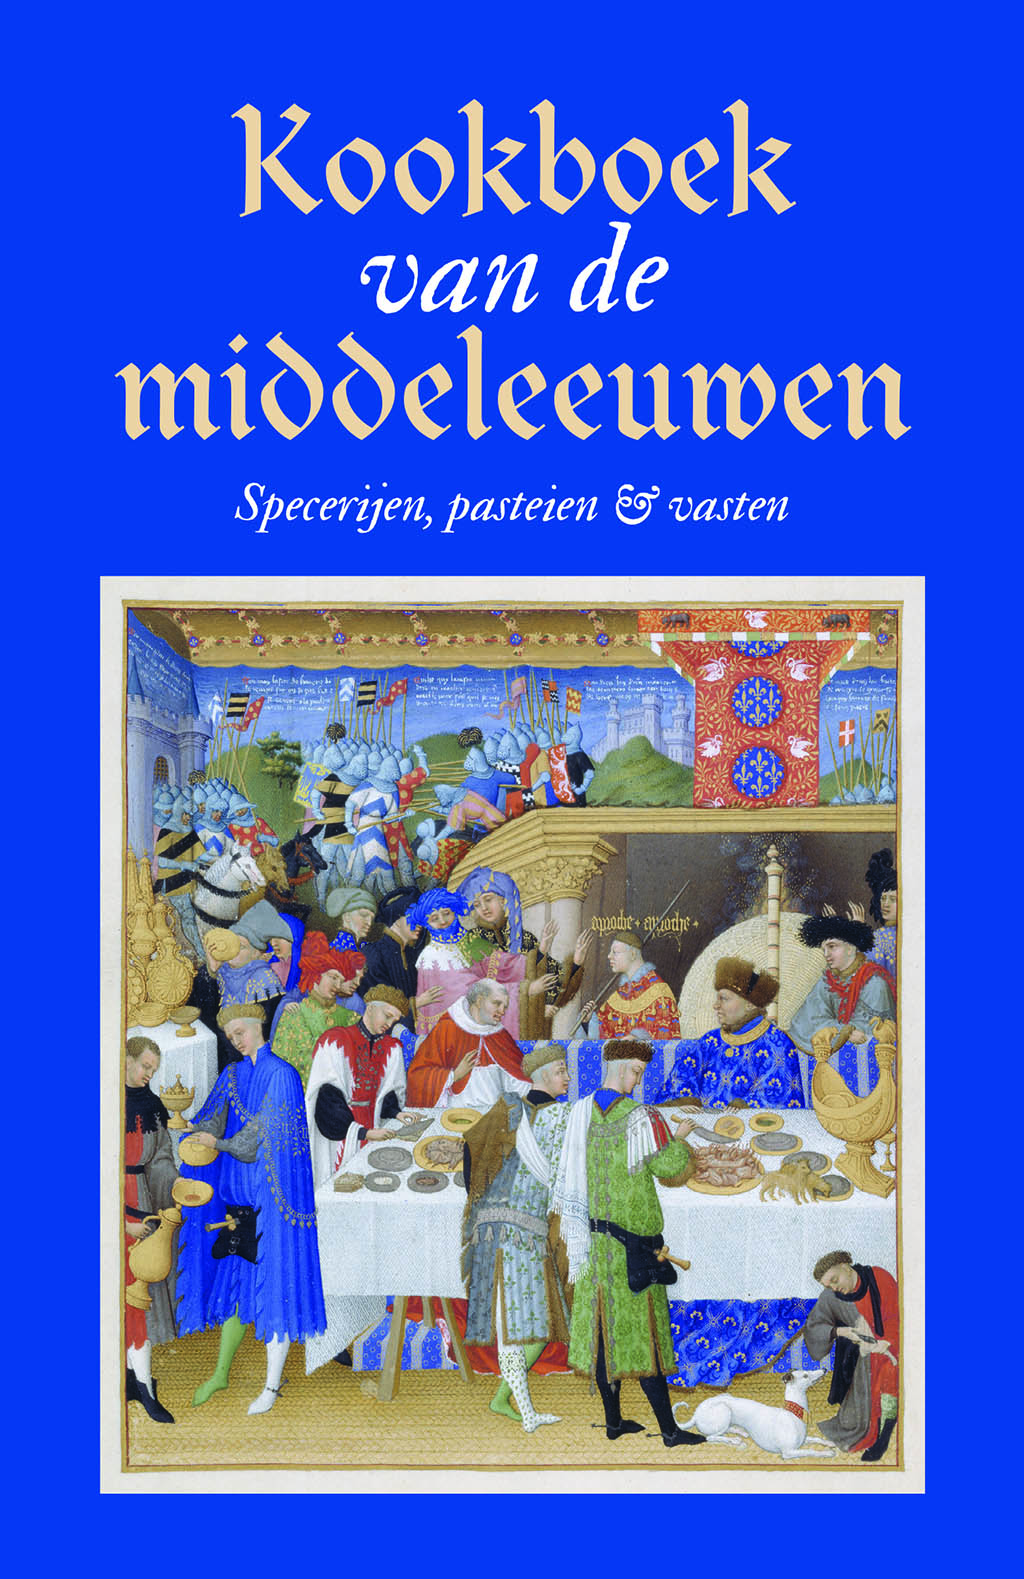 Kookboek van de middeleeuwen - Cover